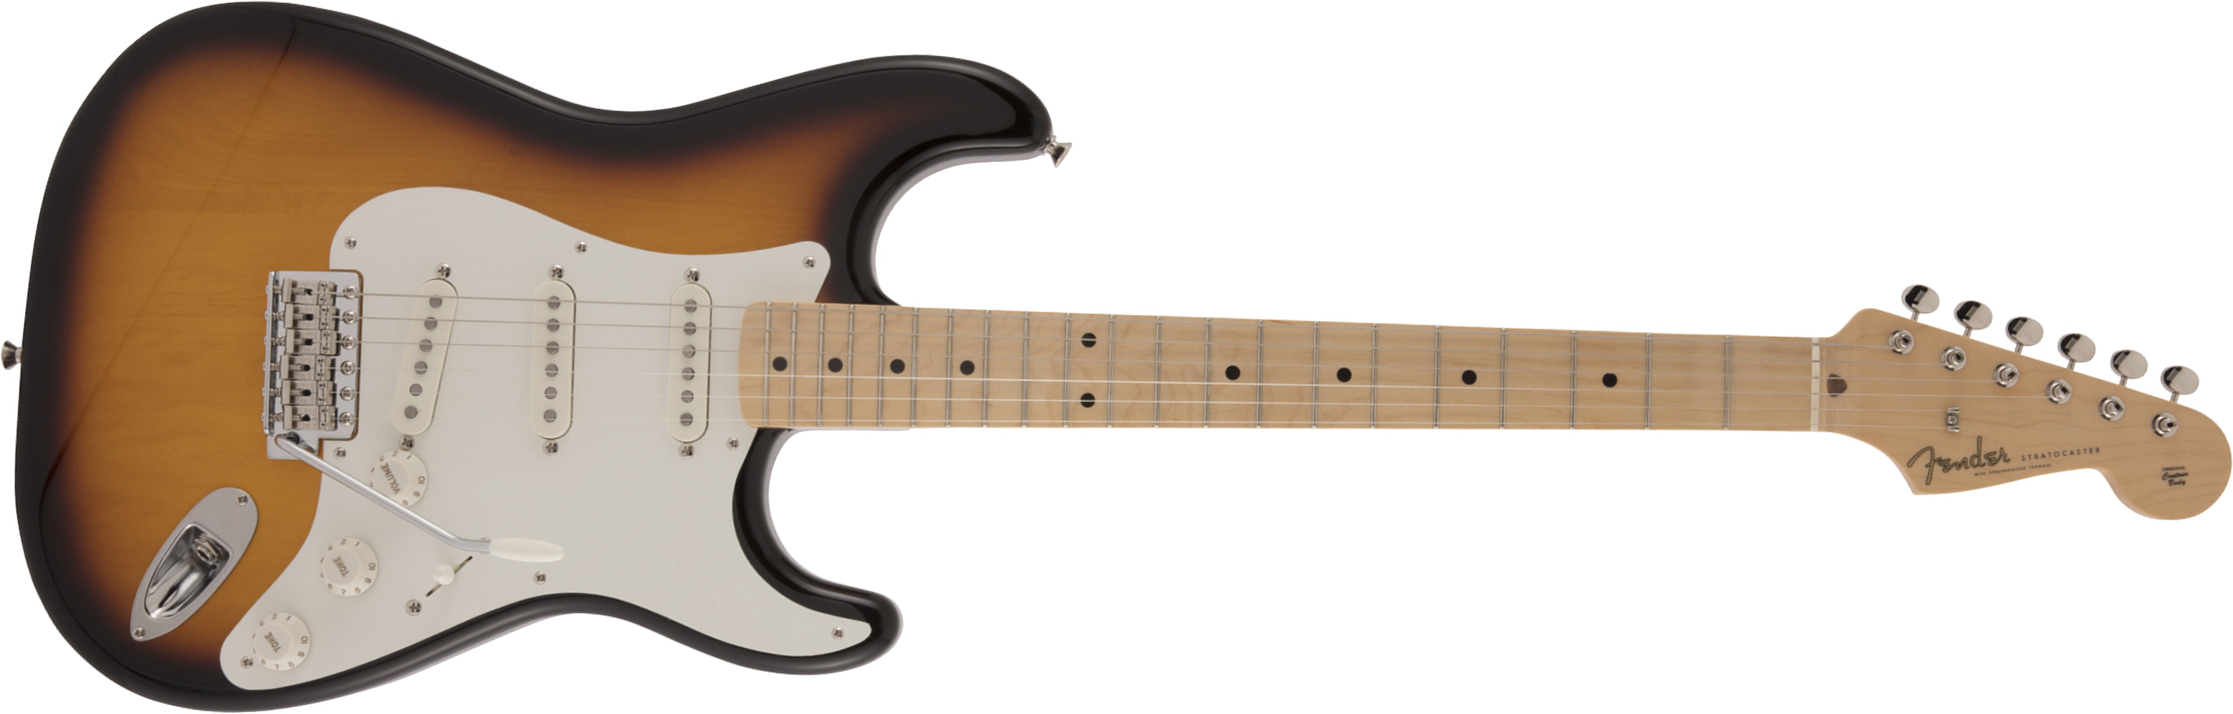 Fender Strat Traditional 50s Jap Mn - 2-color Sunburst - Guitarra eléctrica con forma de str. - Main picture